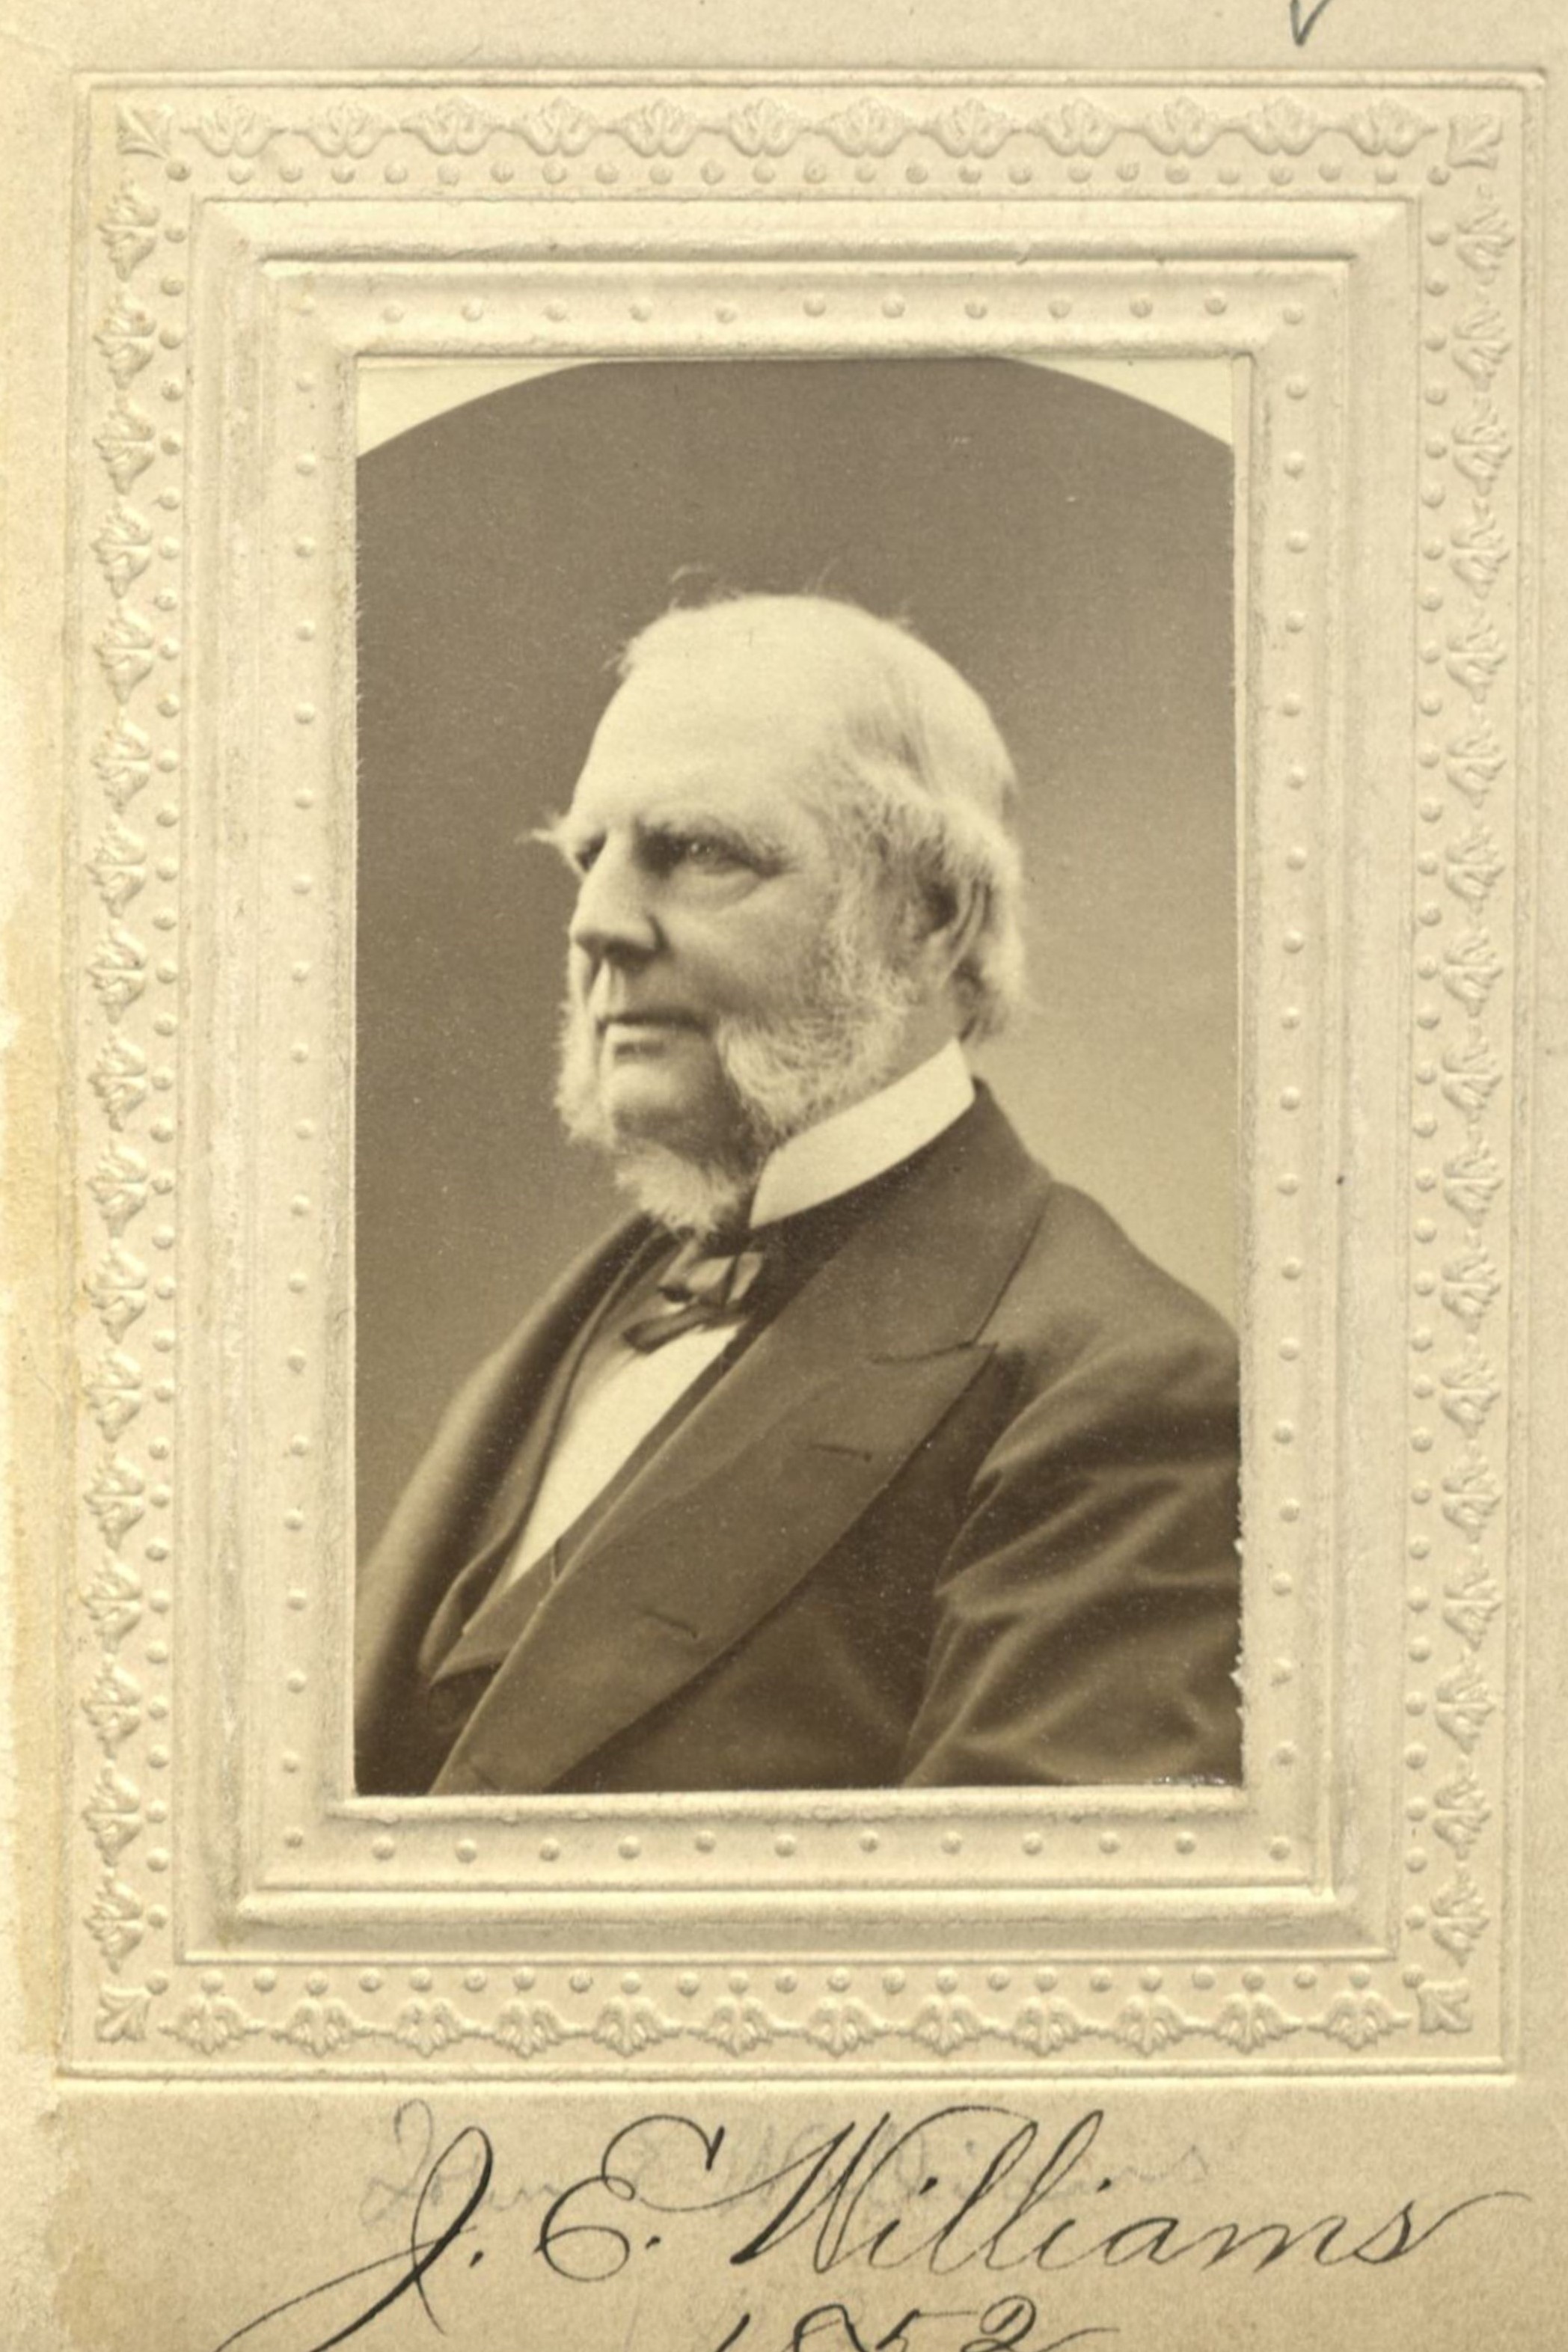 Member portrait of John E. Williams